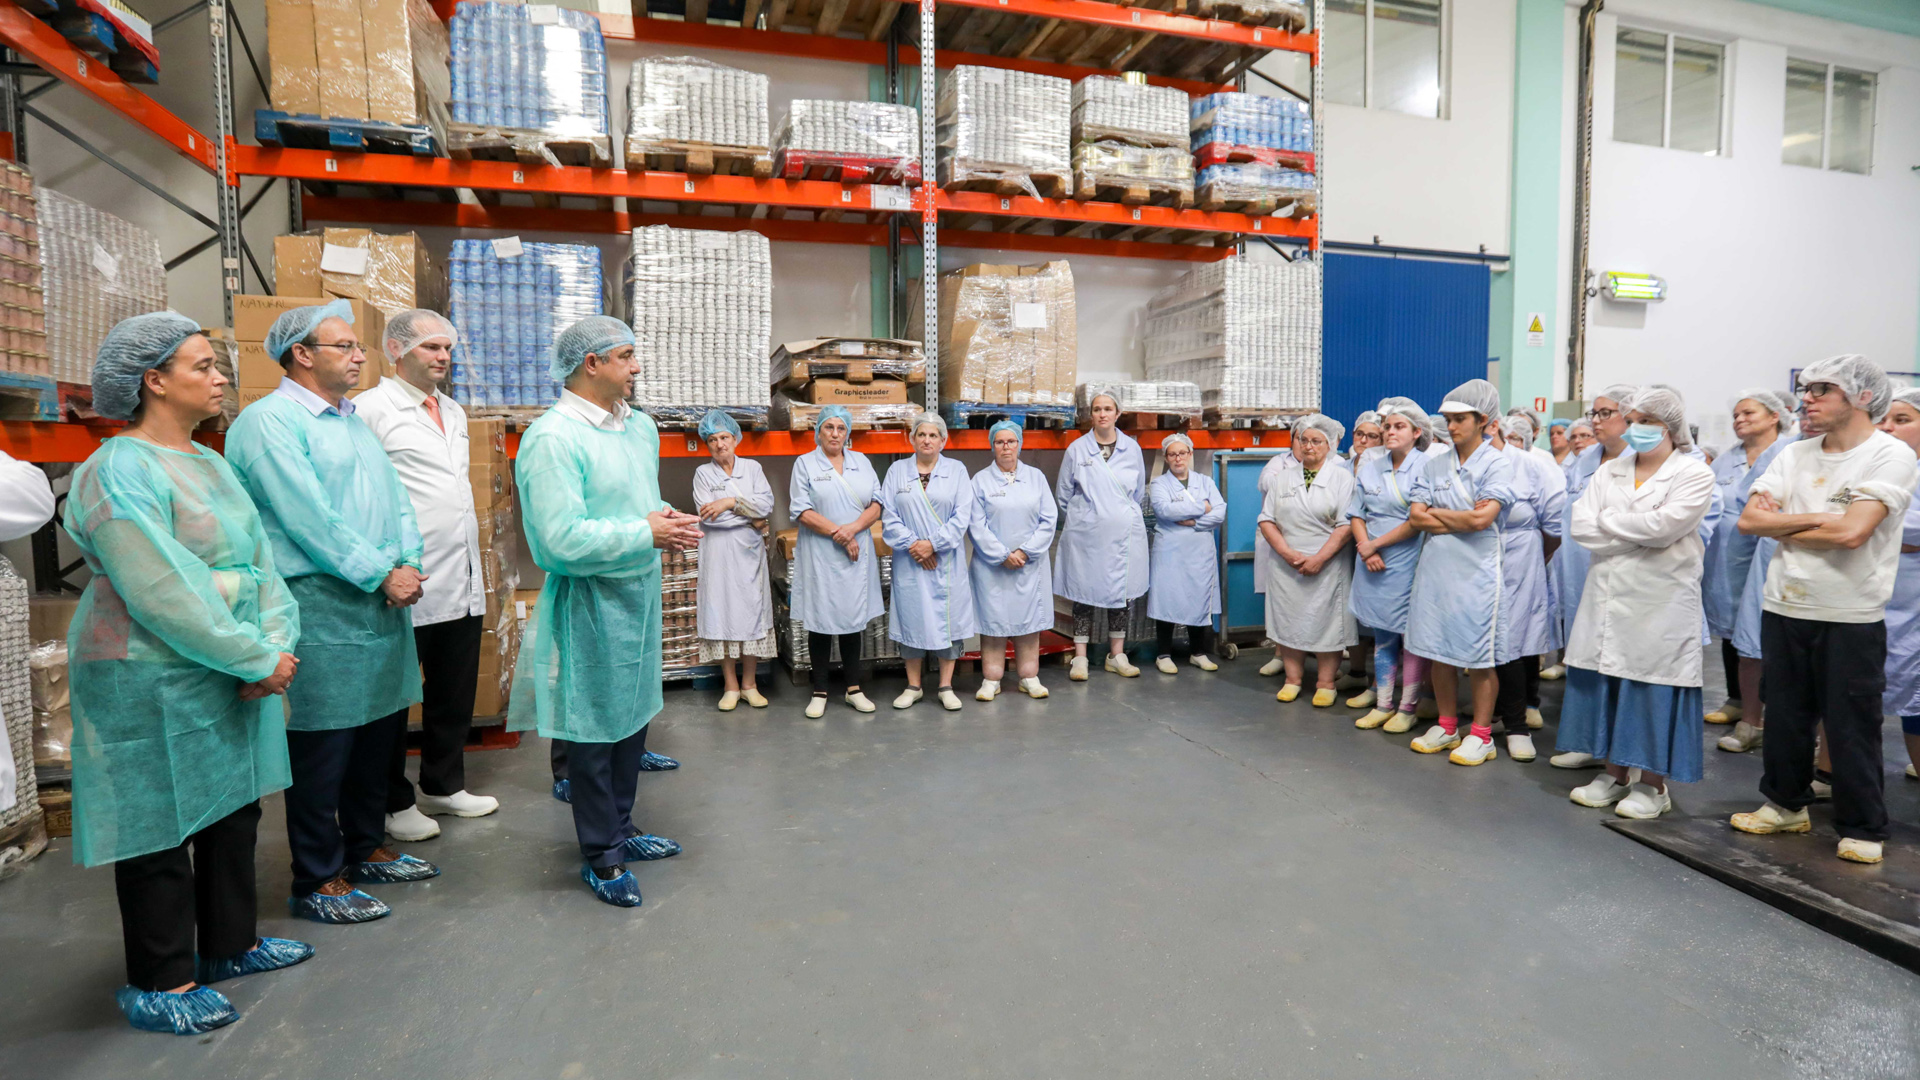 Visita à fábrica Santa Catarina - Indústria Conserveira